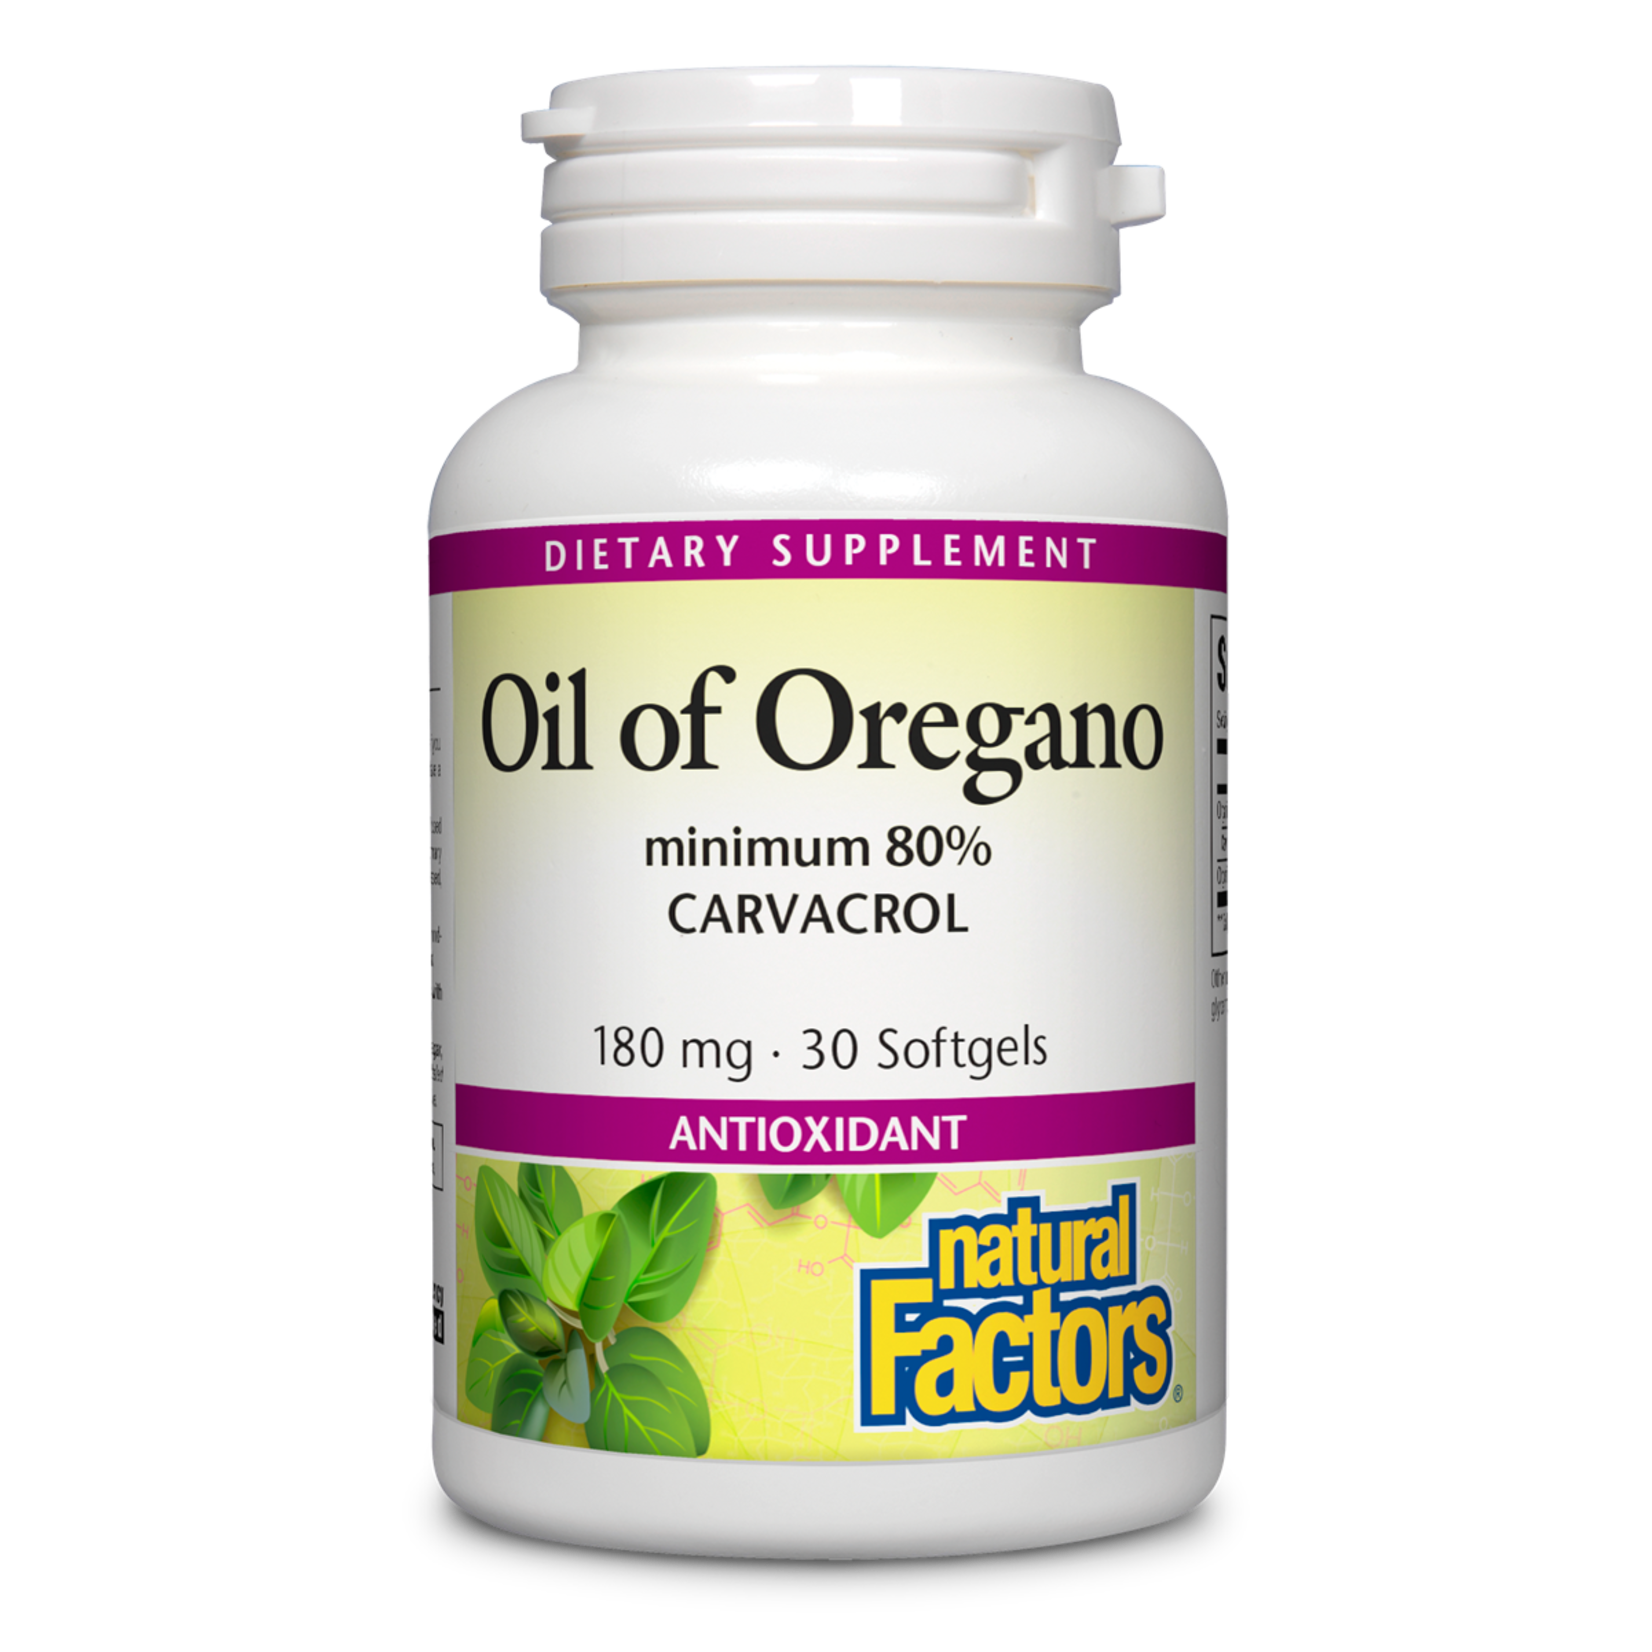 Natural Factors Natural Factors - Oil Of Oregano 180 mg - 30 Softgels